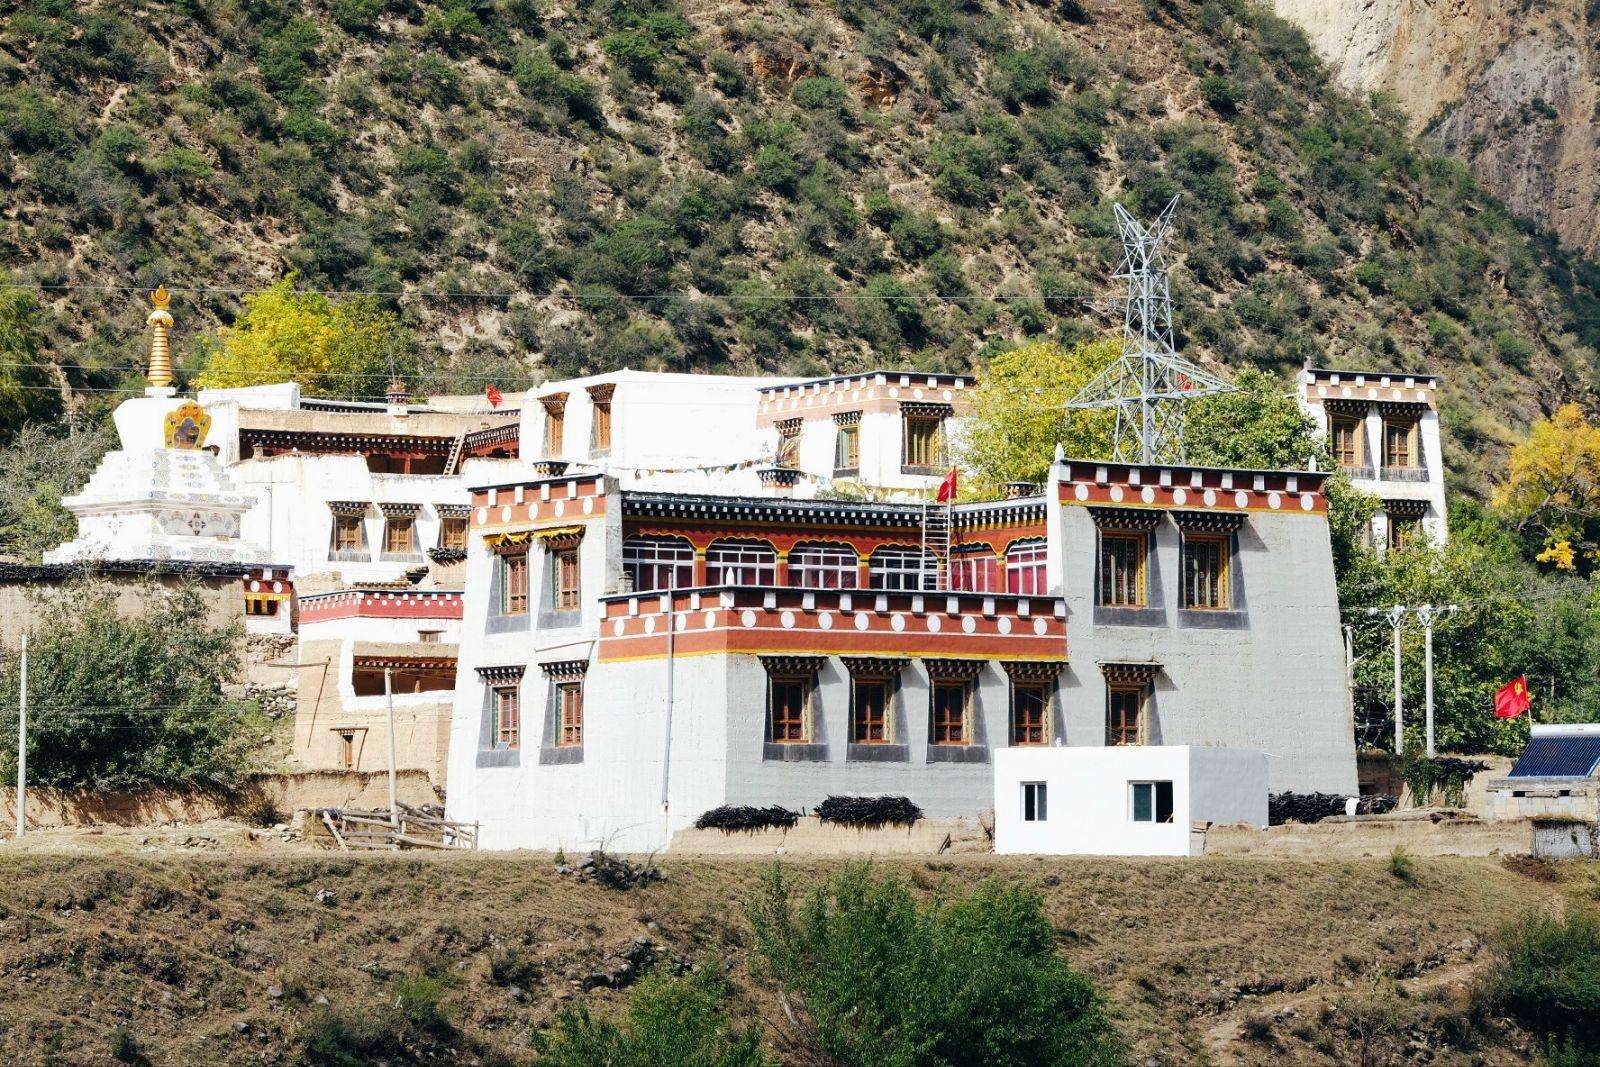 Jiaju_Tibet_Village.jpg